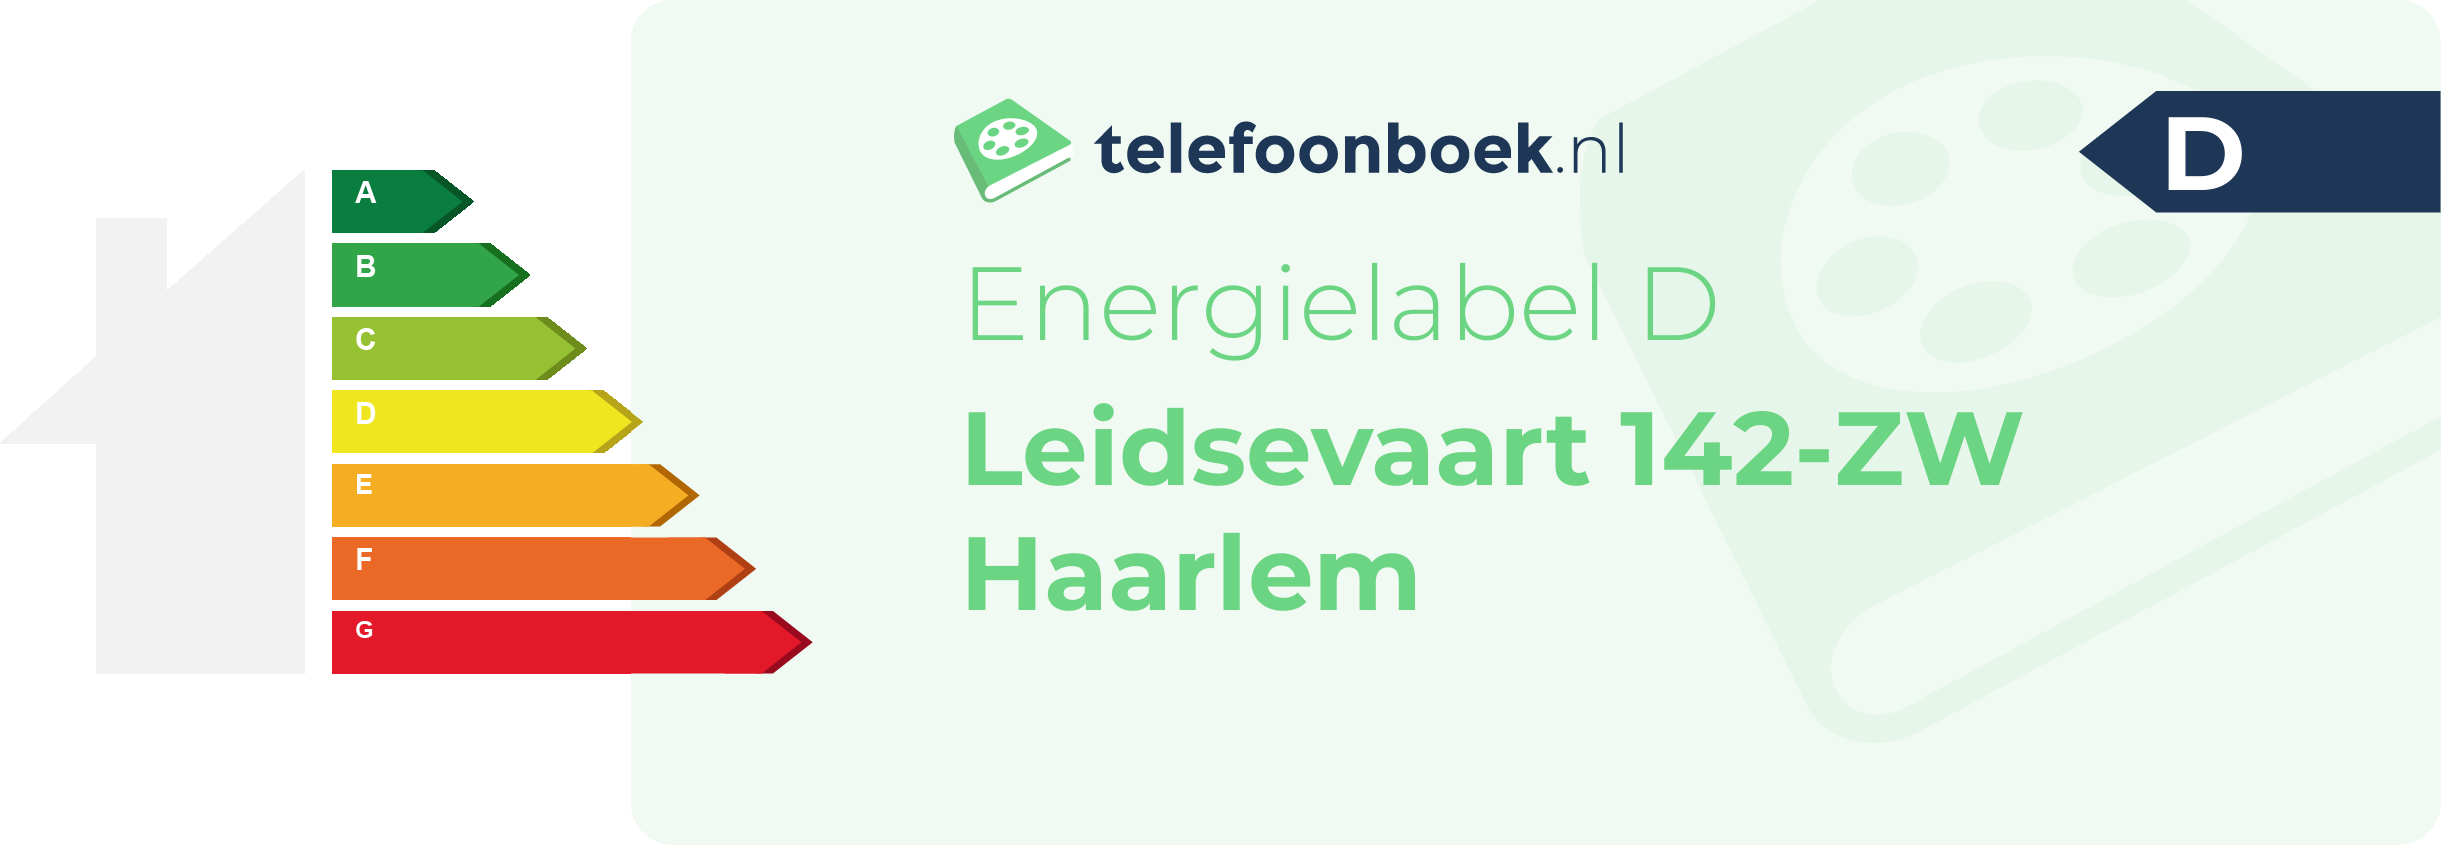 Energielabel Leidsevaart 142-ZW Haarlem